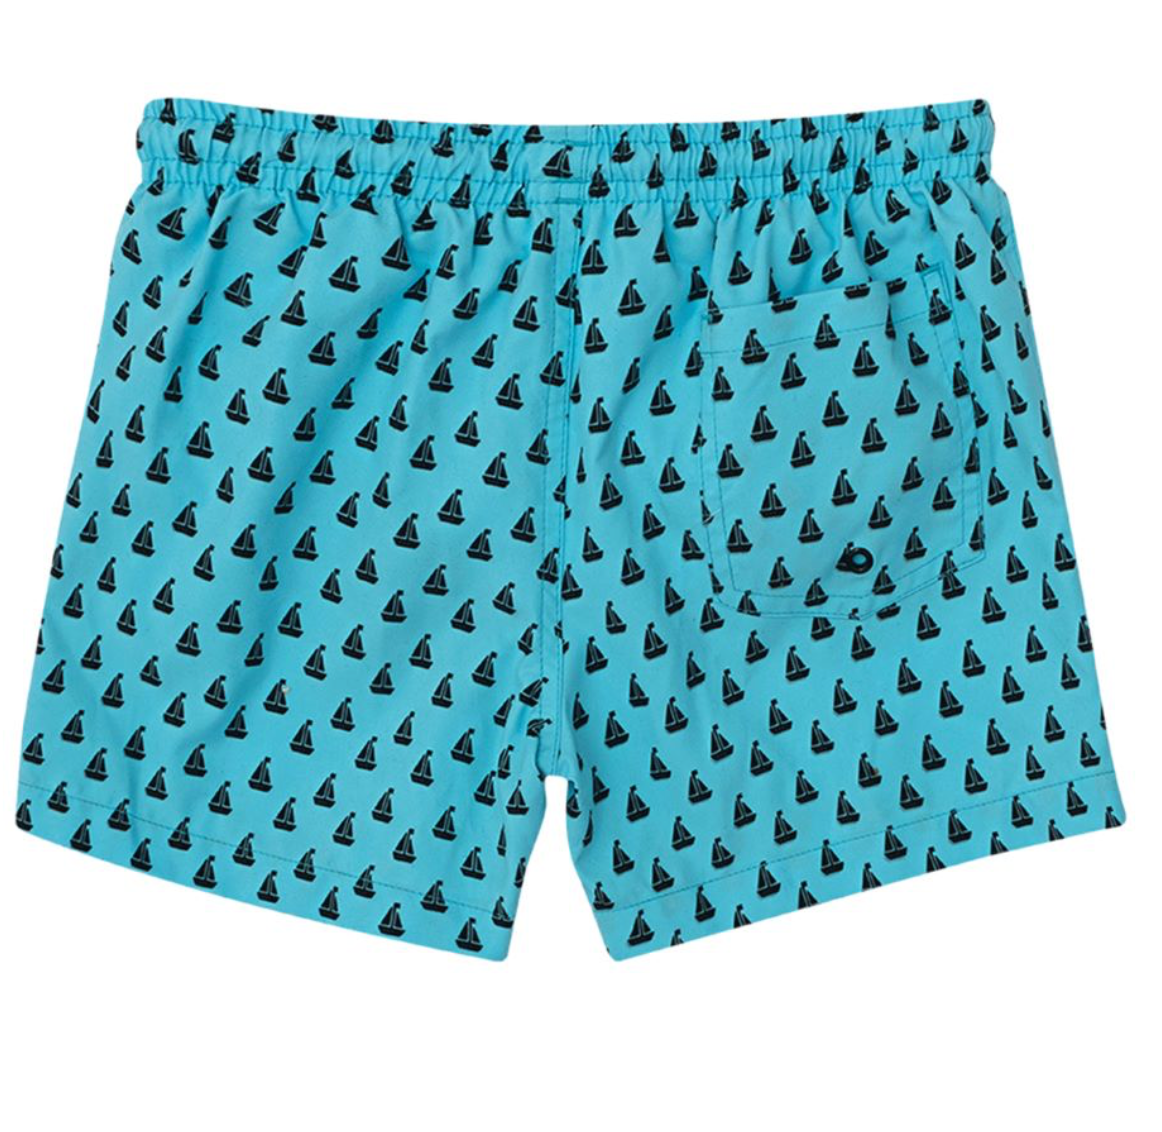 Slipfree Children's Swim Shorts - Blue